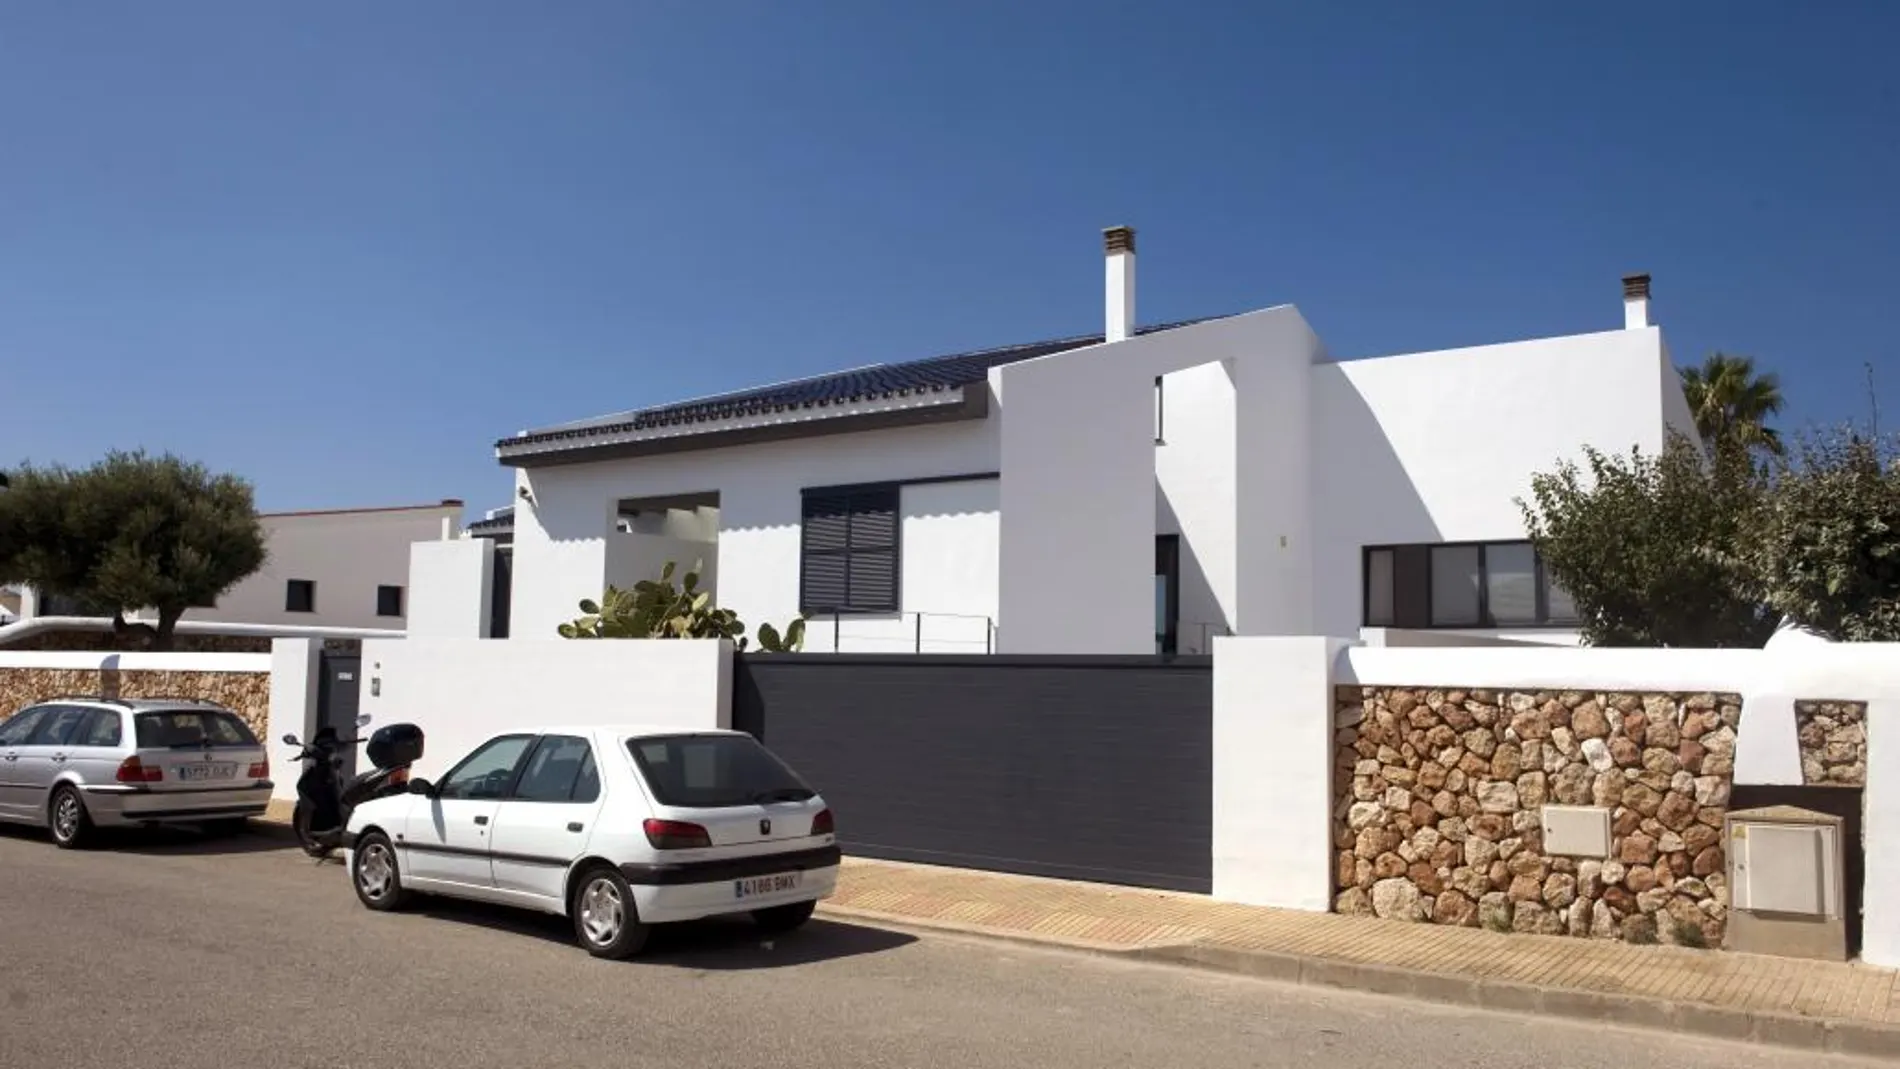 Vista de la vivienda de la urbanización de Son Blanc de Ciutadella (Menorca), donde se ha producido en suceso